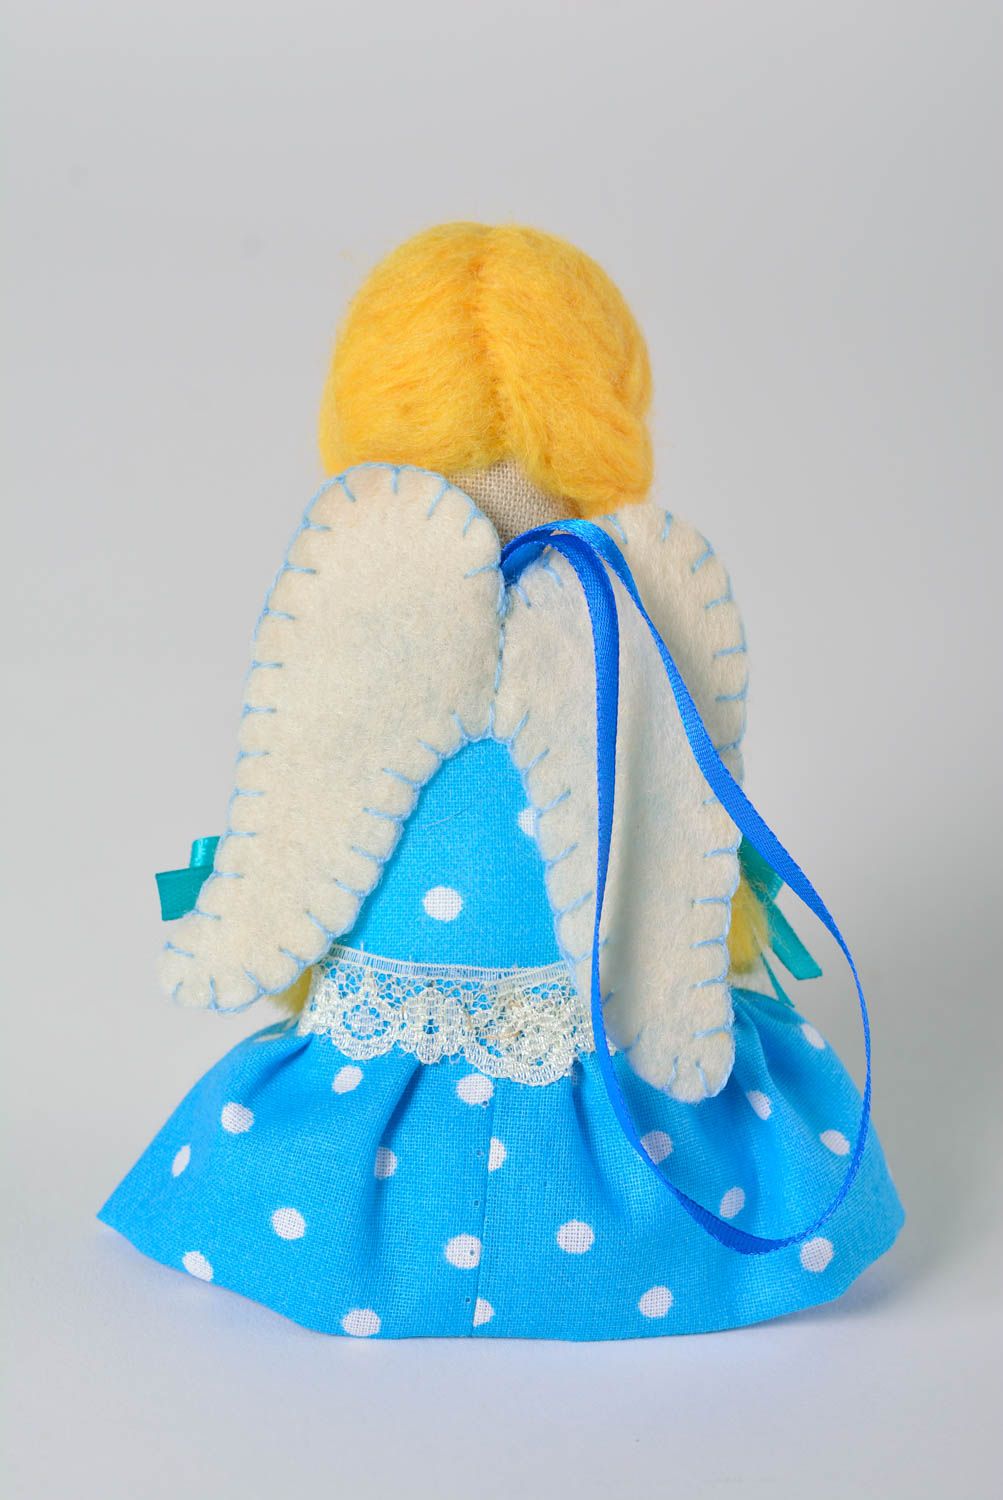 Мягкая игрушка ангел ручной работы игрушка для детей игрушка для девочек декор фото 3